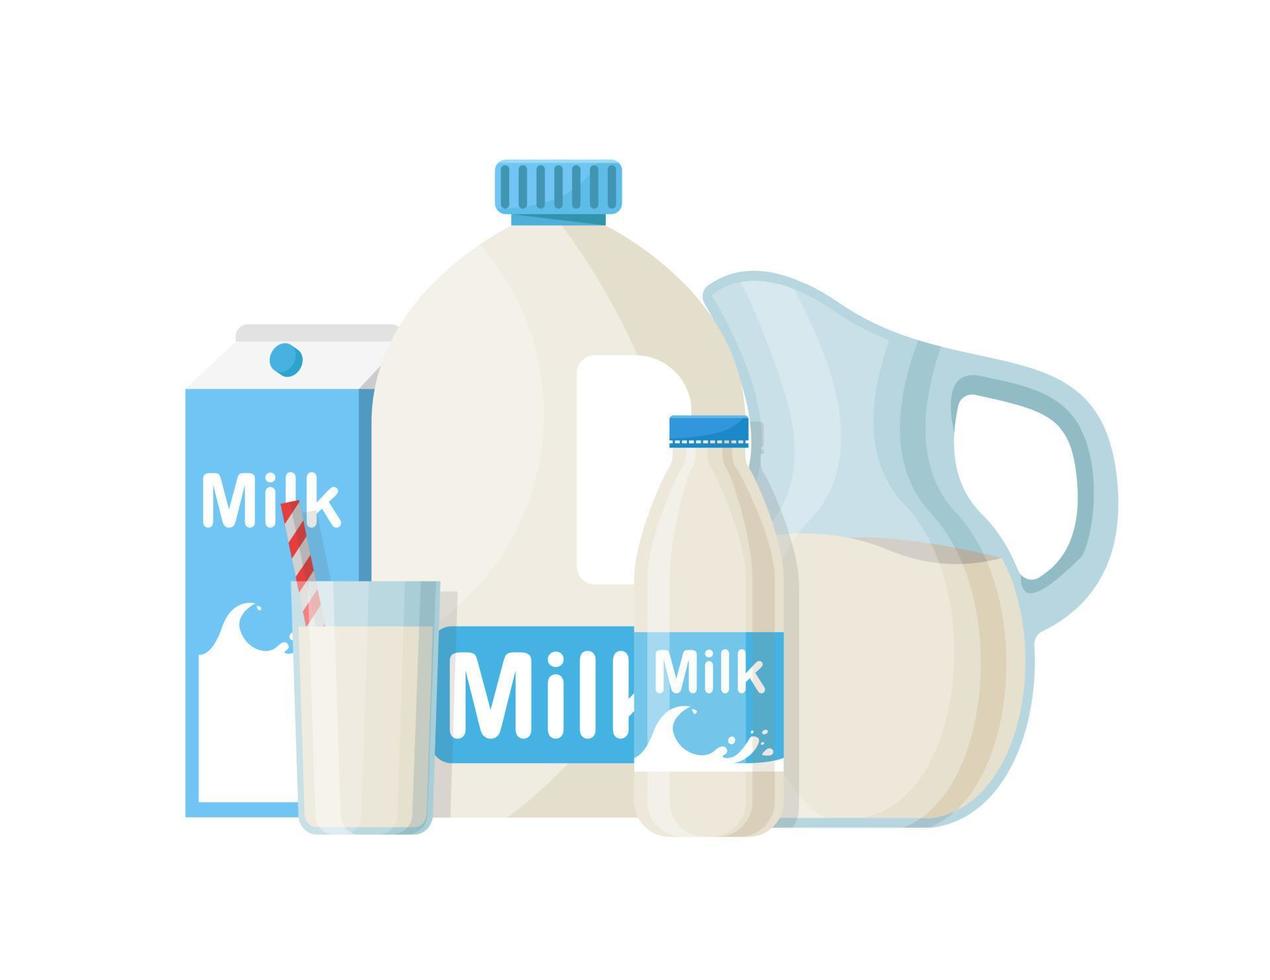 ensemble de lait dans différents emballages, verre, carton, bouteille isolé sur fond blanc vecteur